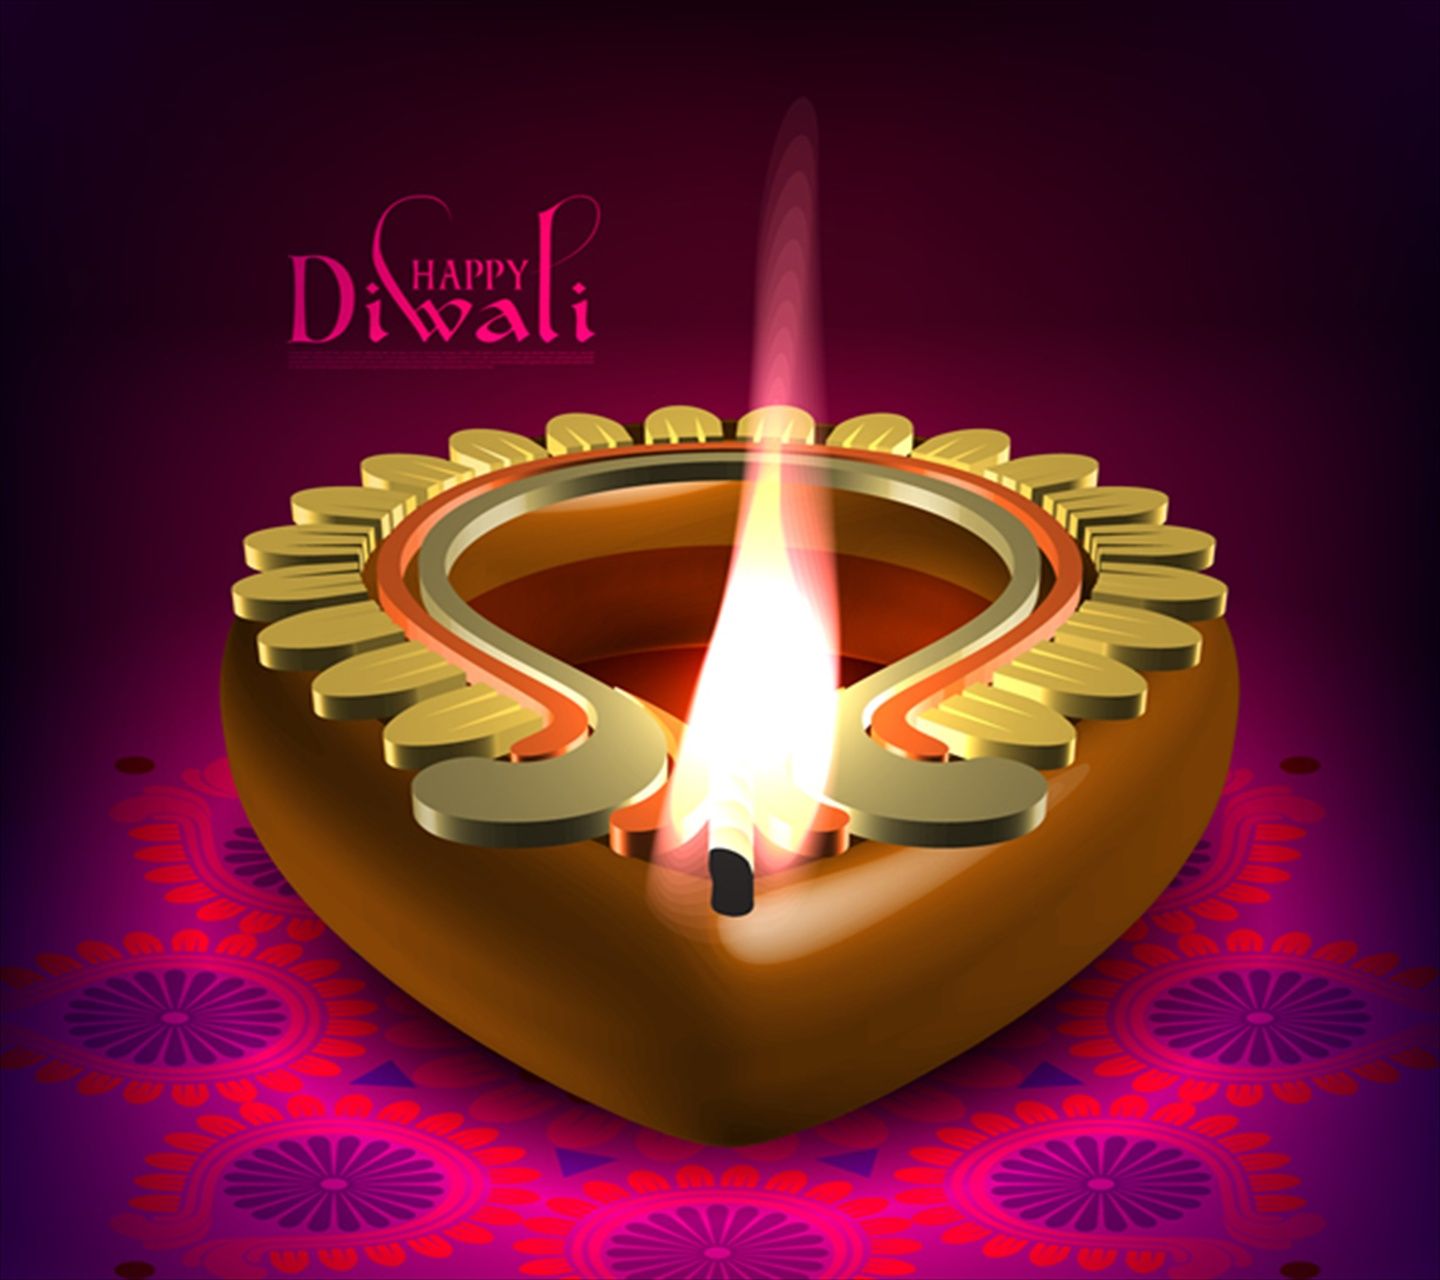 Happy Diwali Diya HD Wallpaper. Happy diwali image, Diwali image, Happy diwali